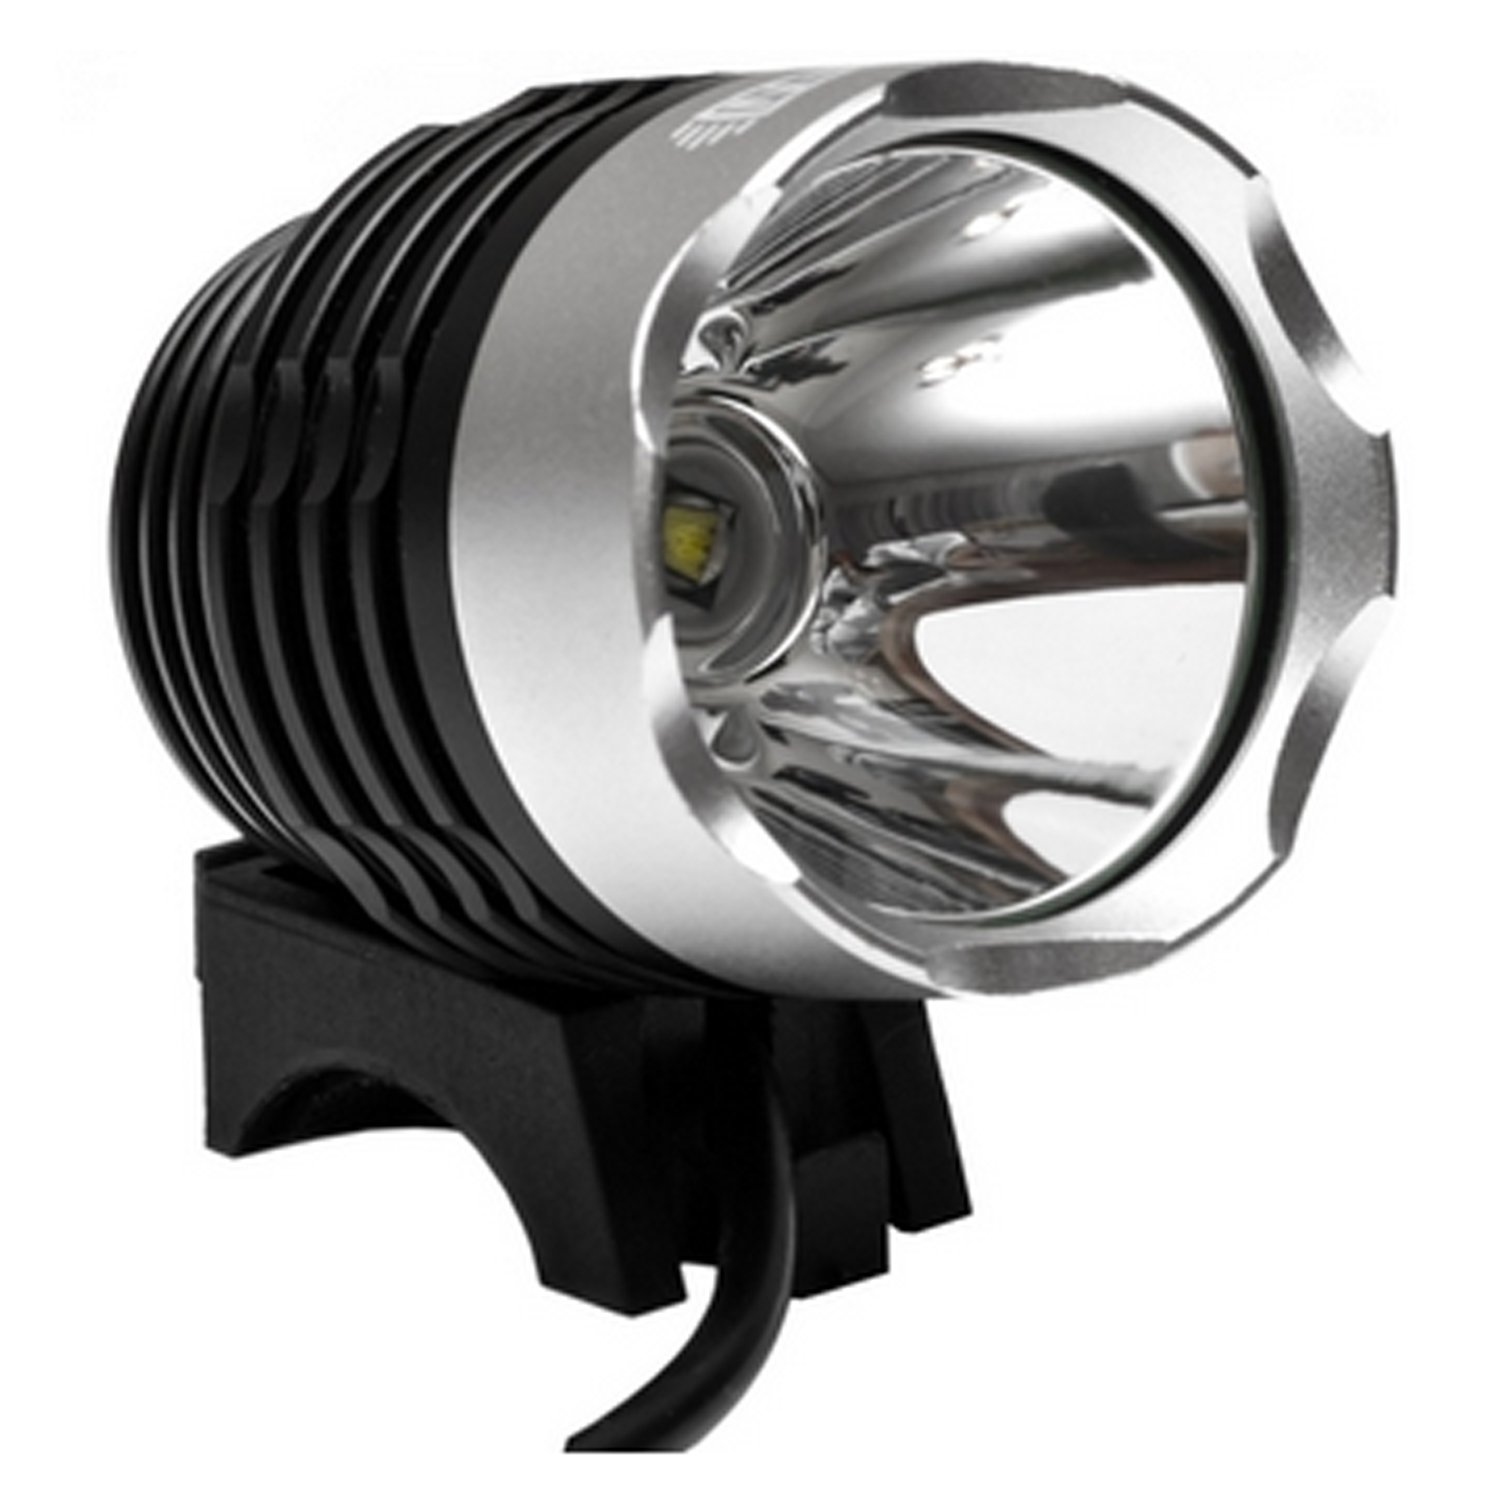 Велосипедный фонарь Lumen 301, передний, 1200 lumens, Cree XML-T6, черный, УТ000218363